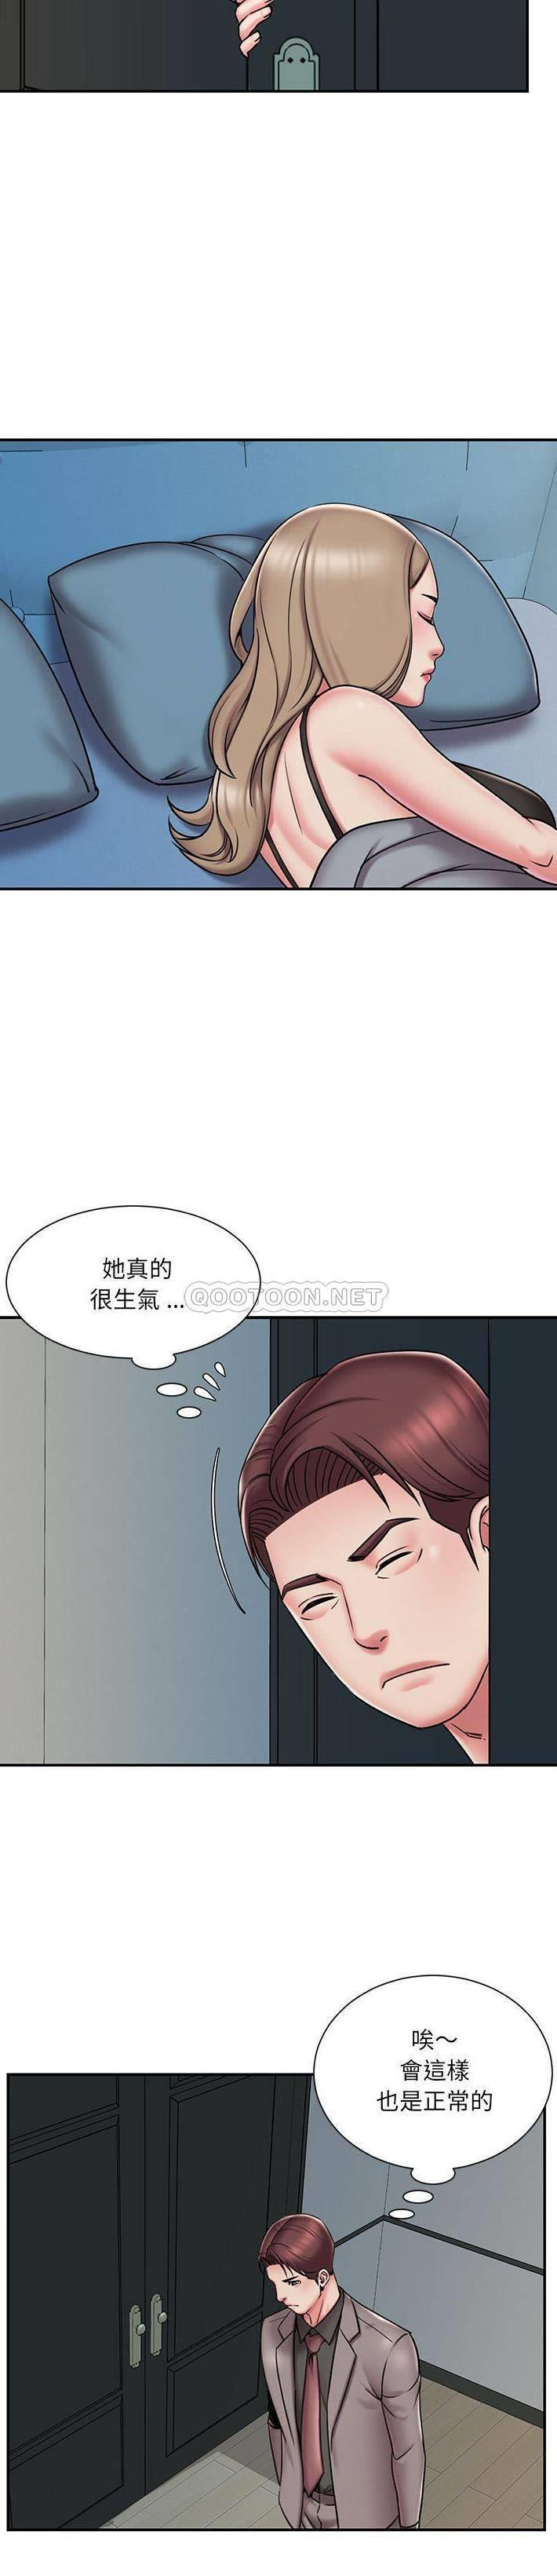 韩国污漫画 被拋棄的男人(男孩沒人愛) 第42话 5